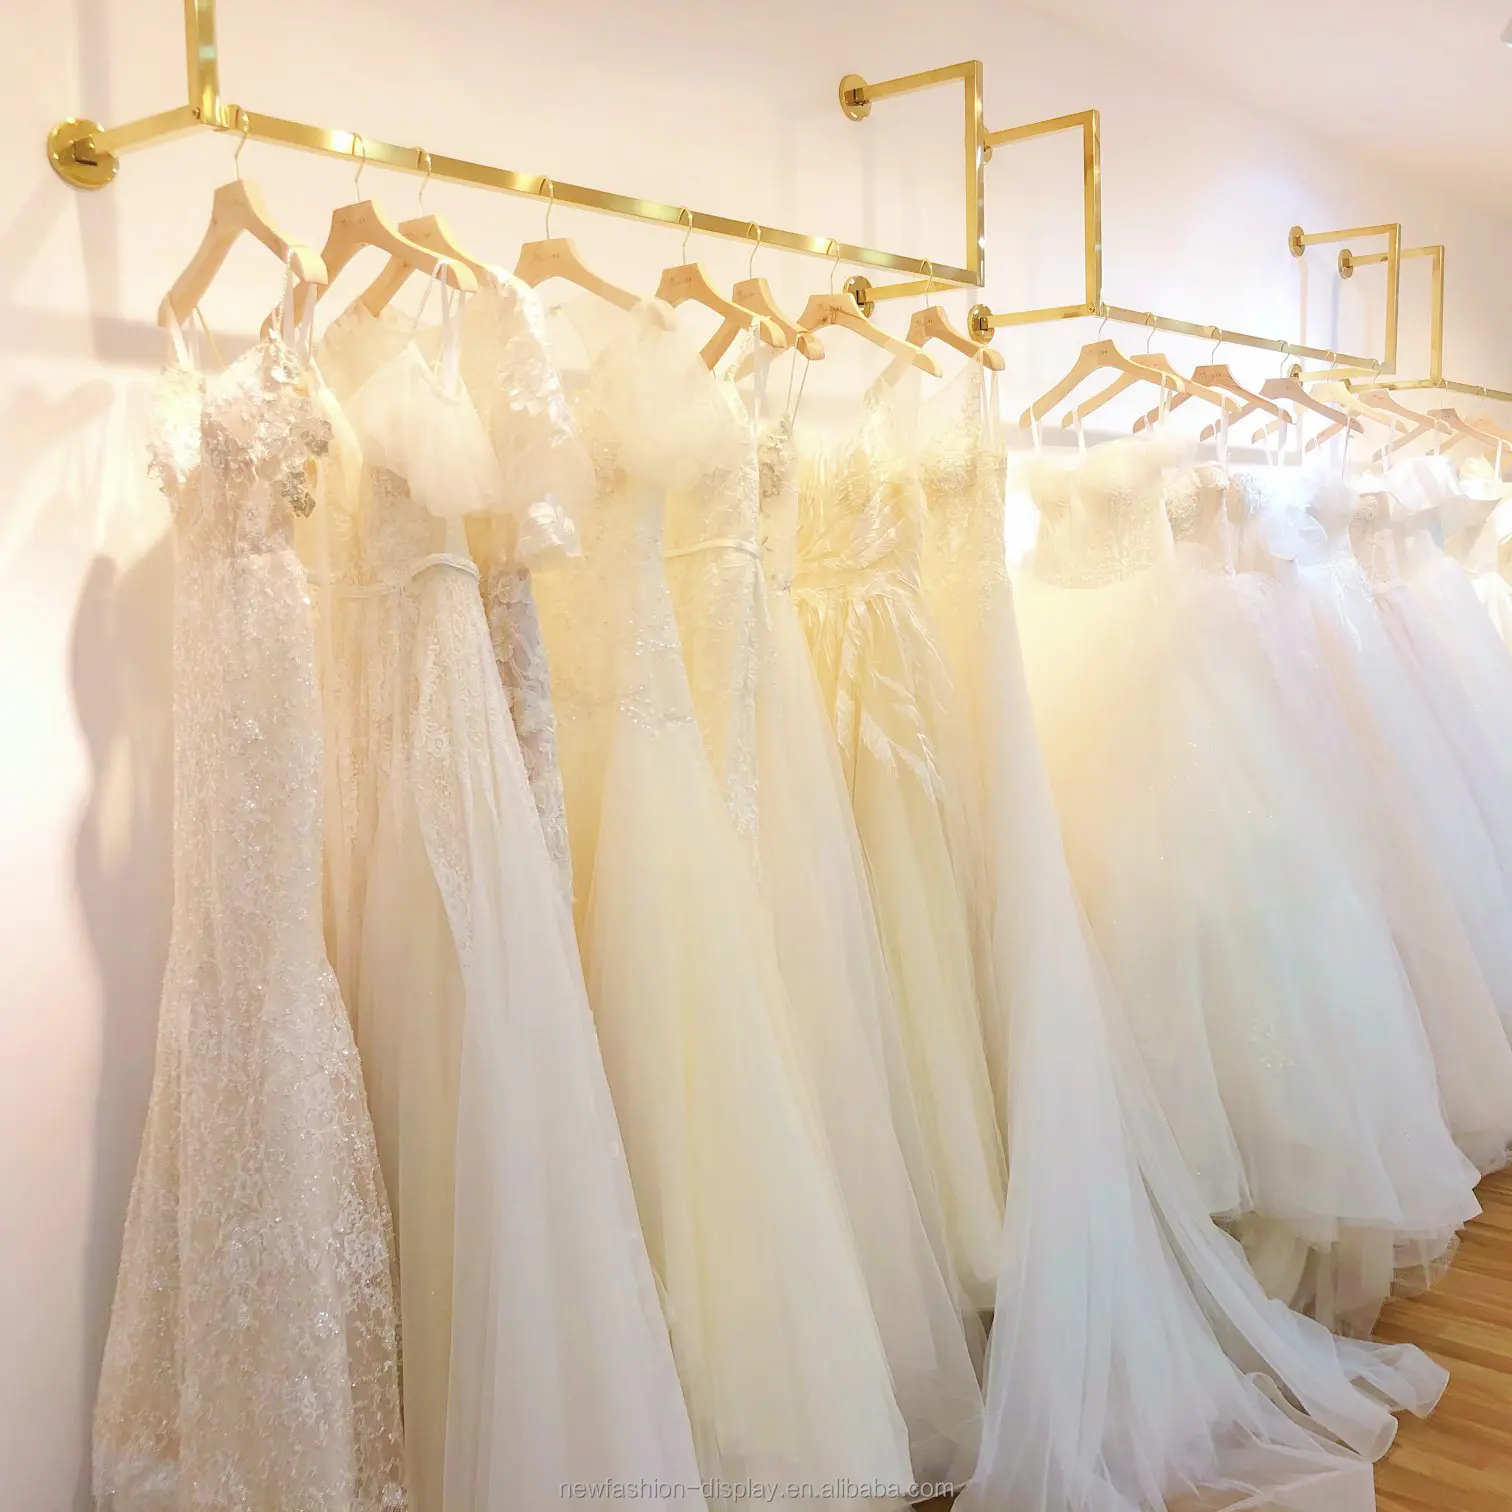 Negozio di abiti Boutique negozio di abbigliamento da parete in acciaio inossidabile abiti da donna Stand abito da sposa abiti da parete dorati